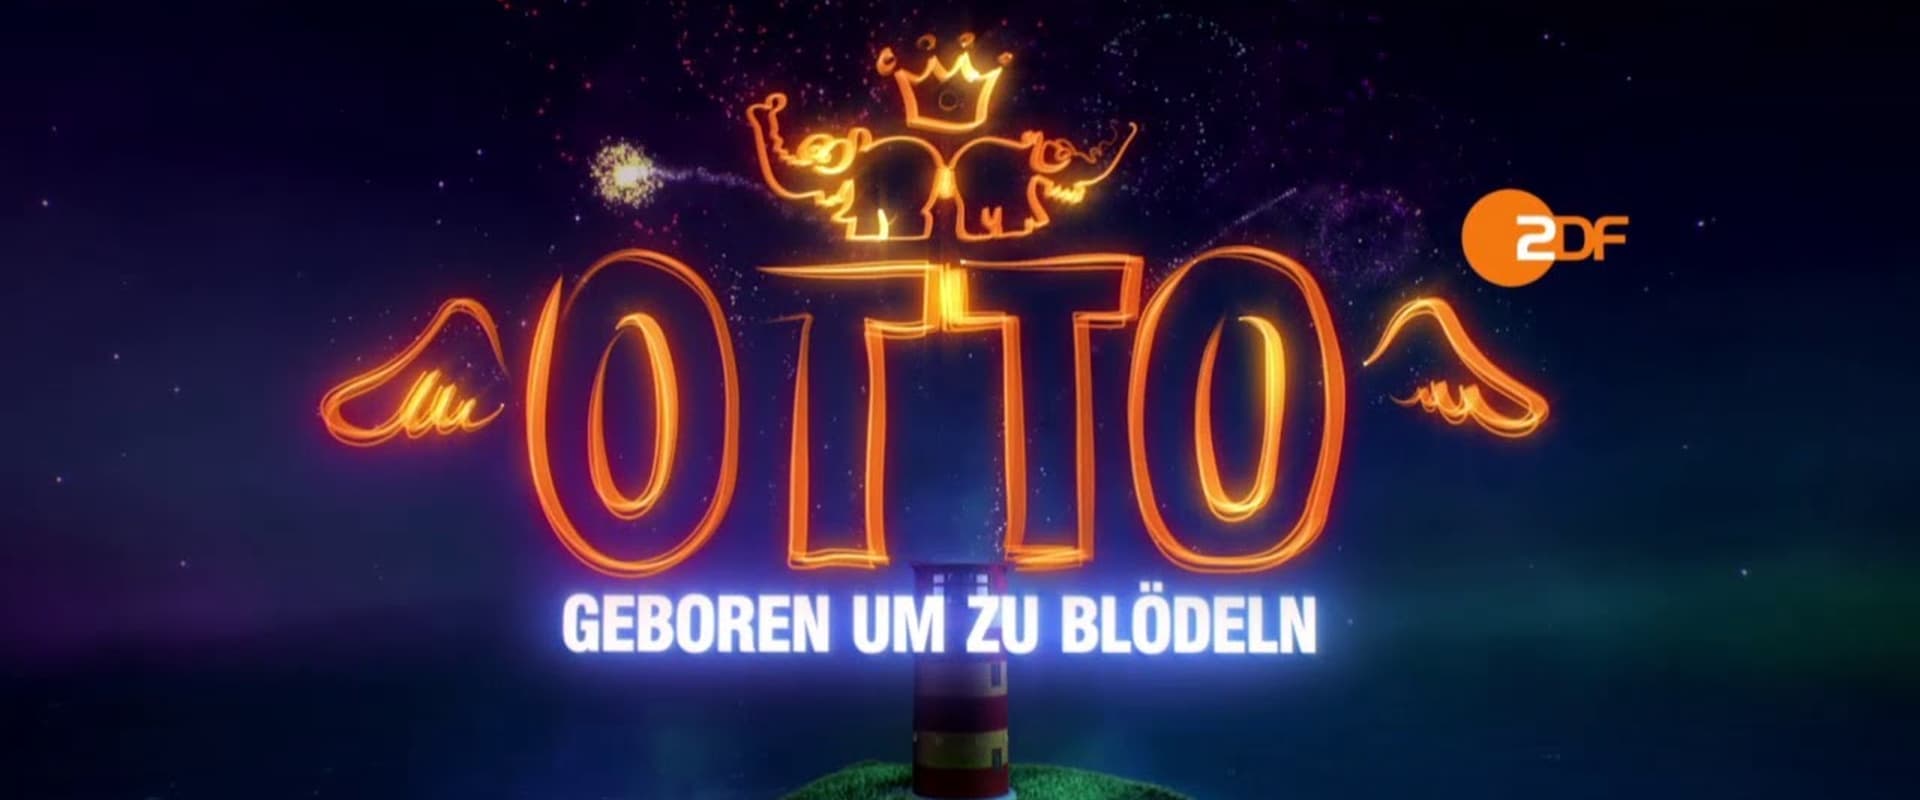 Otto - Geboren um zu blödeln